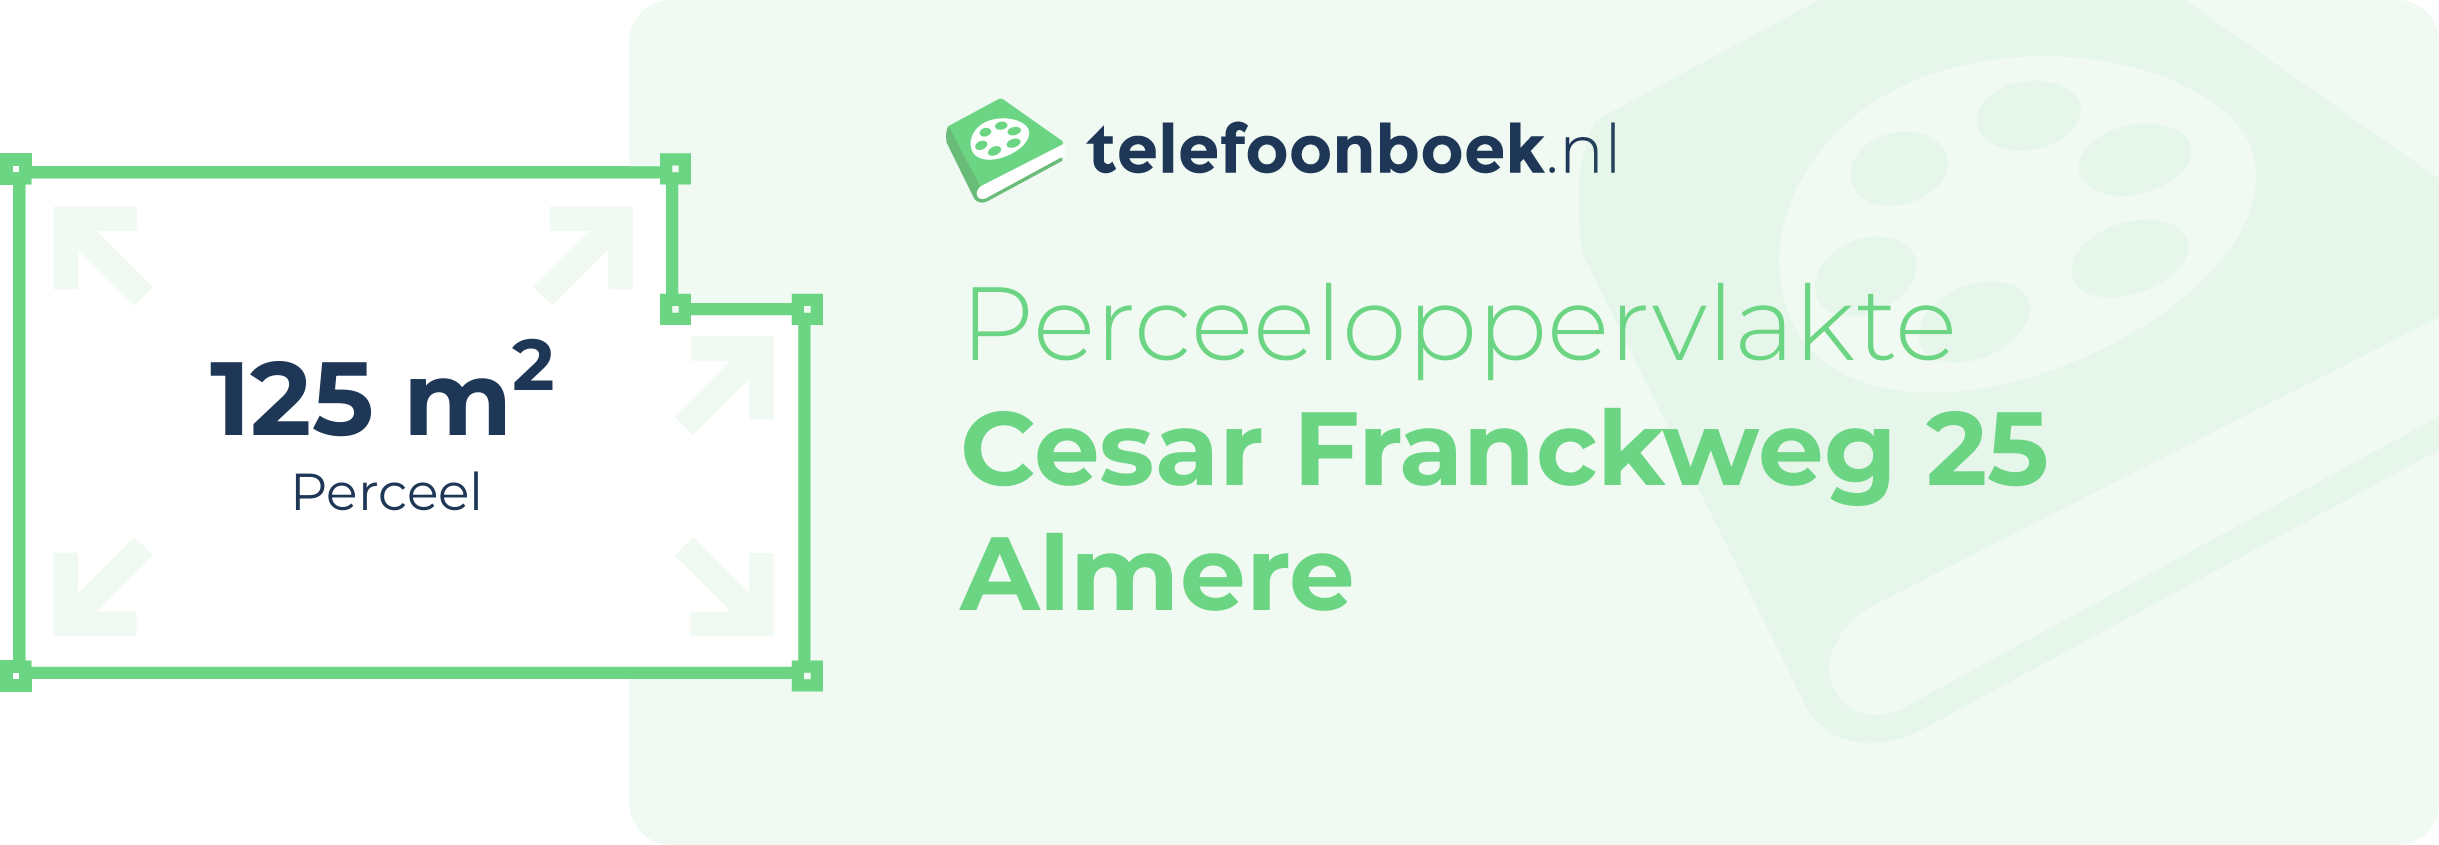 Perceeloppervlakte Cesar Franckweg 25 Almere